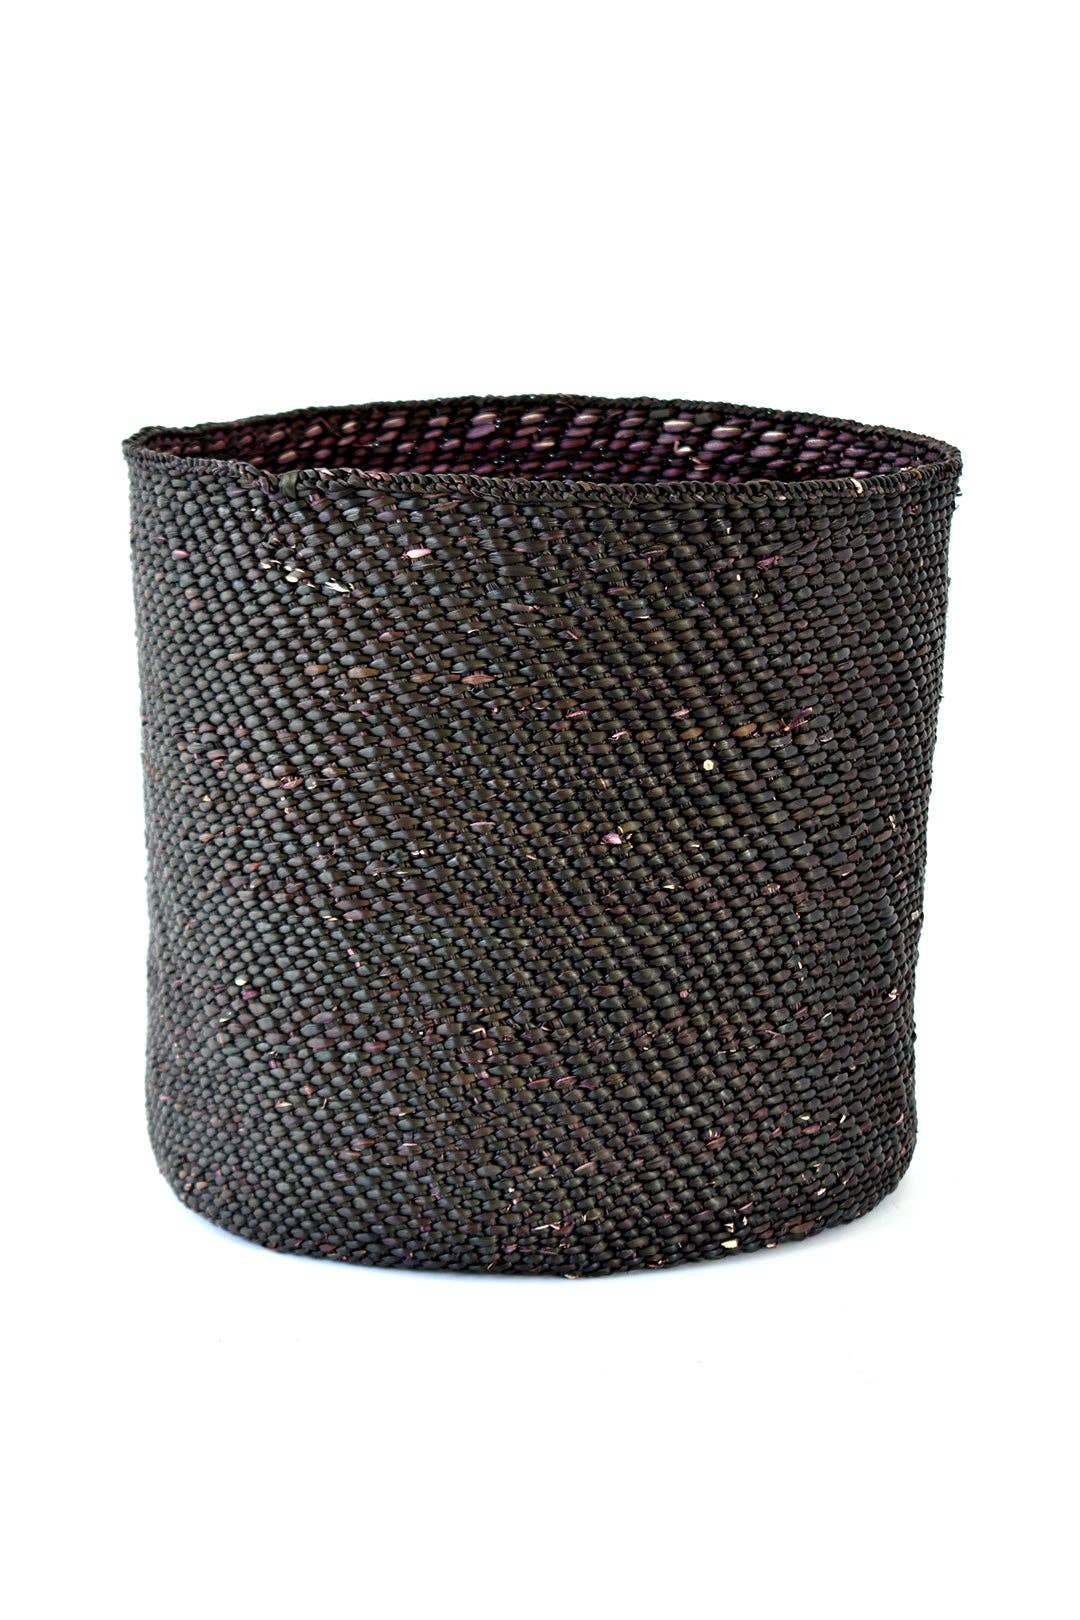 Medium Solid Black Iringa Basket